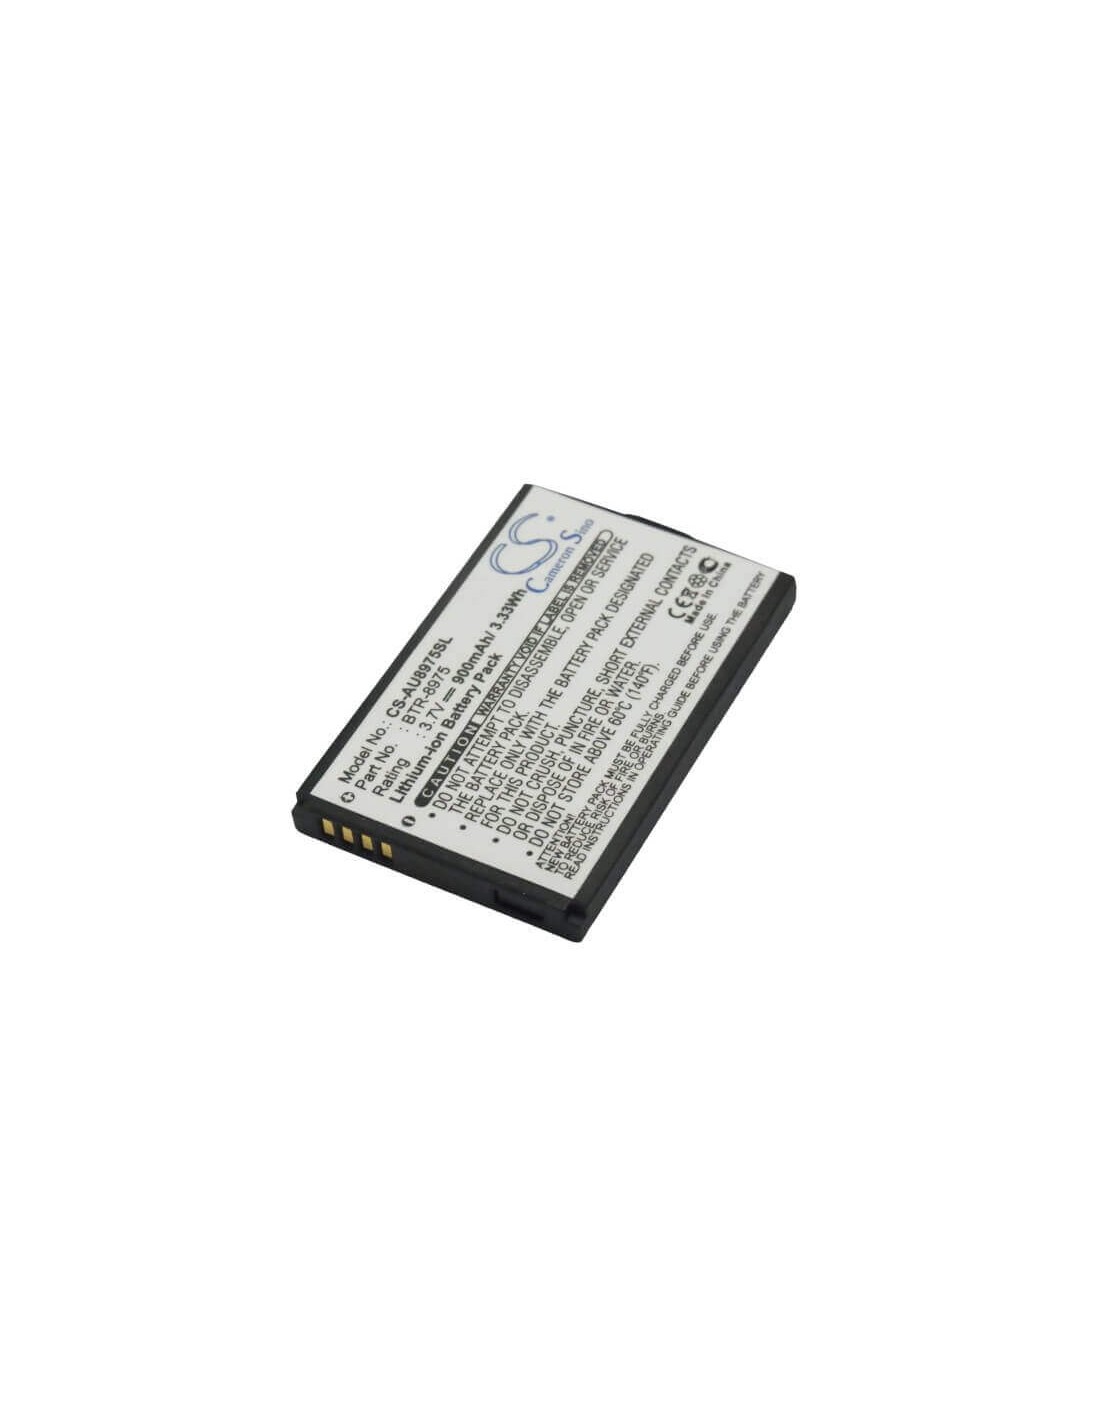 Battery for Audiovox CDM-8975 3.7V, 800mAh - 2.96Wh